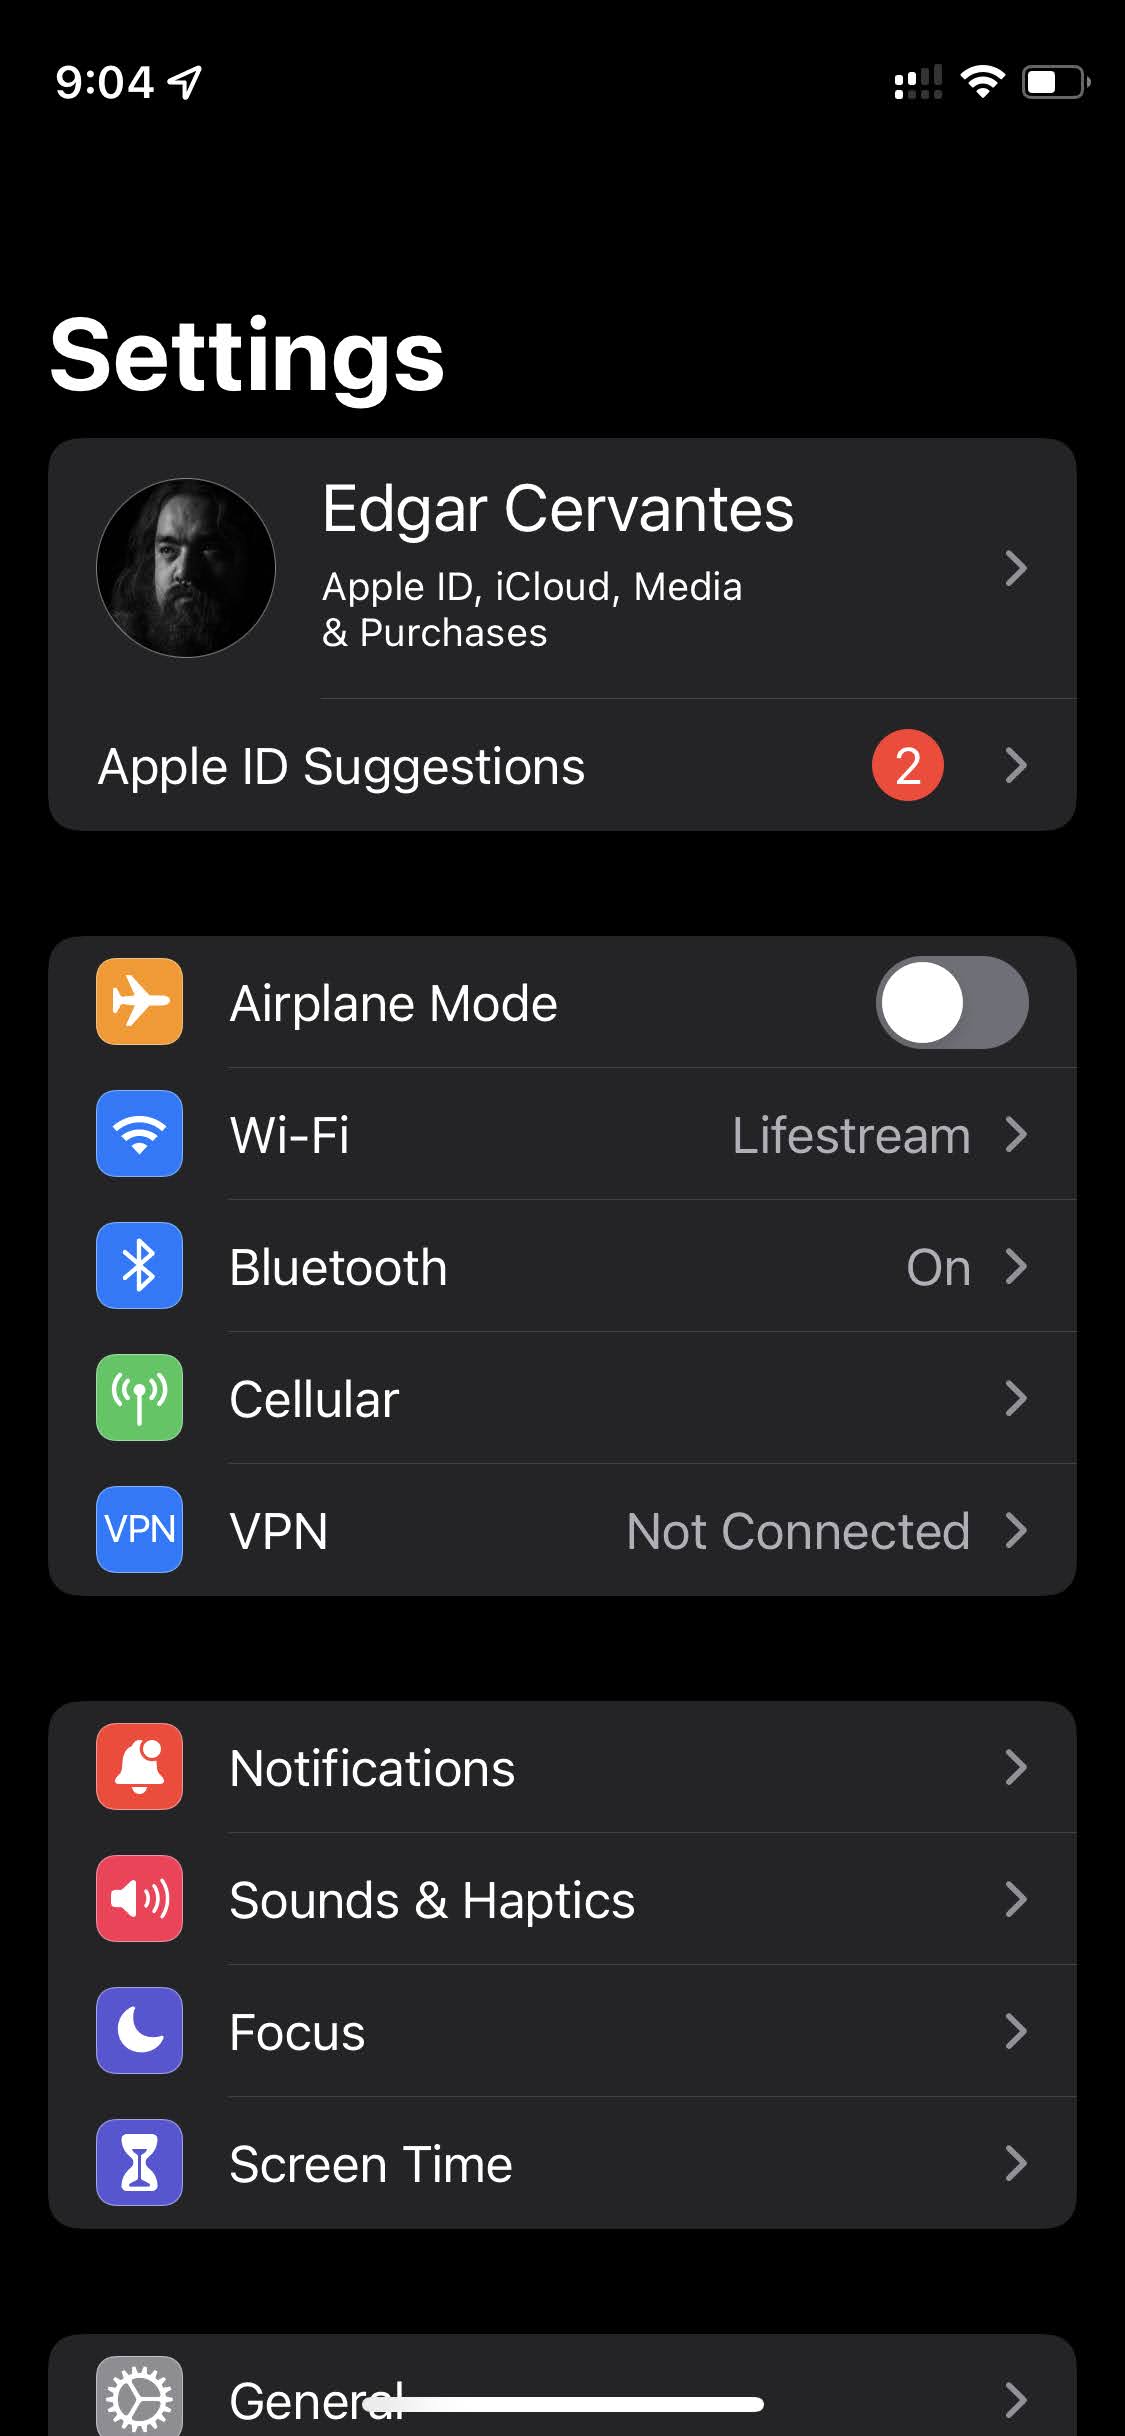 Add a Bluetooth device on iOS 1